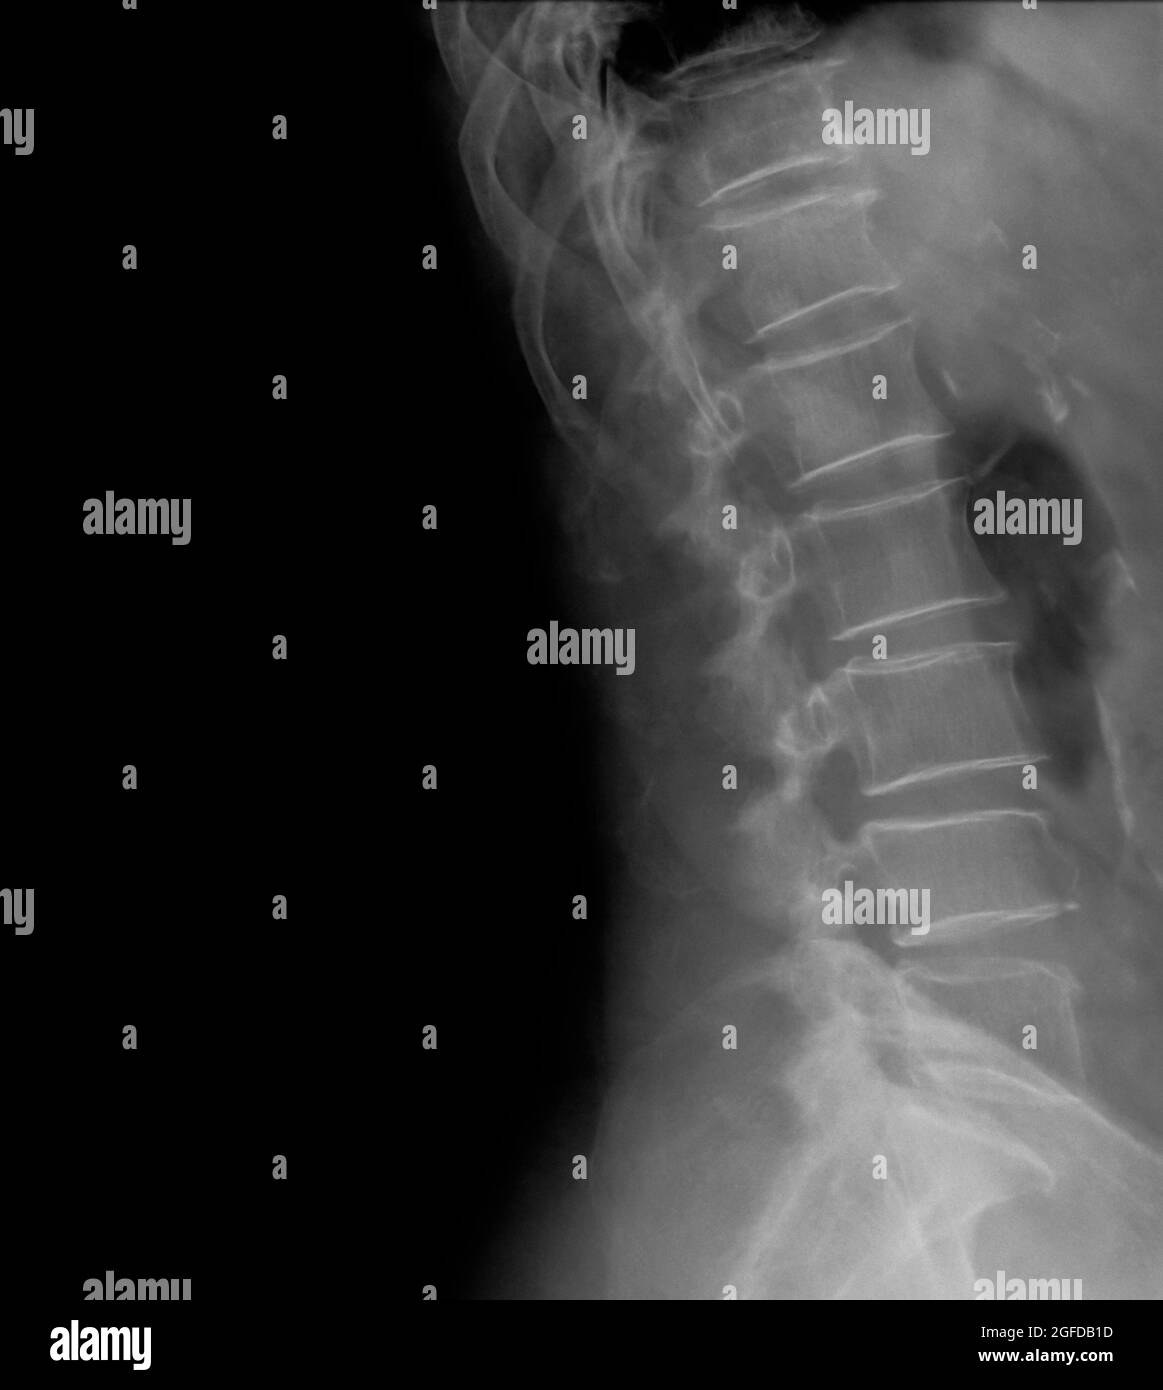 Vista laterale radiologica della colonna lombare umana paziente di 77 anni Foto Stock